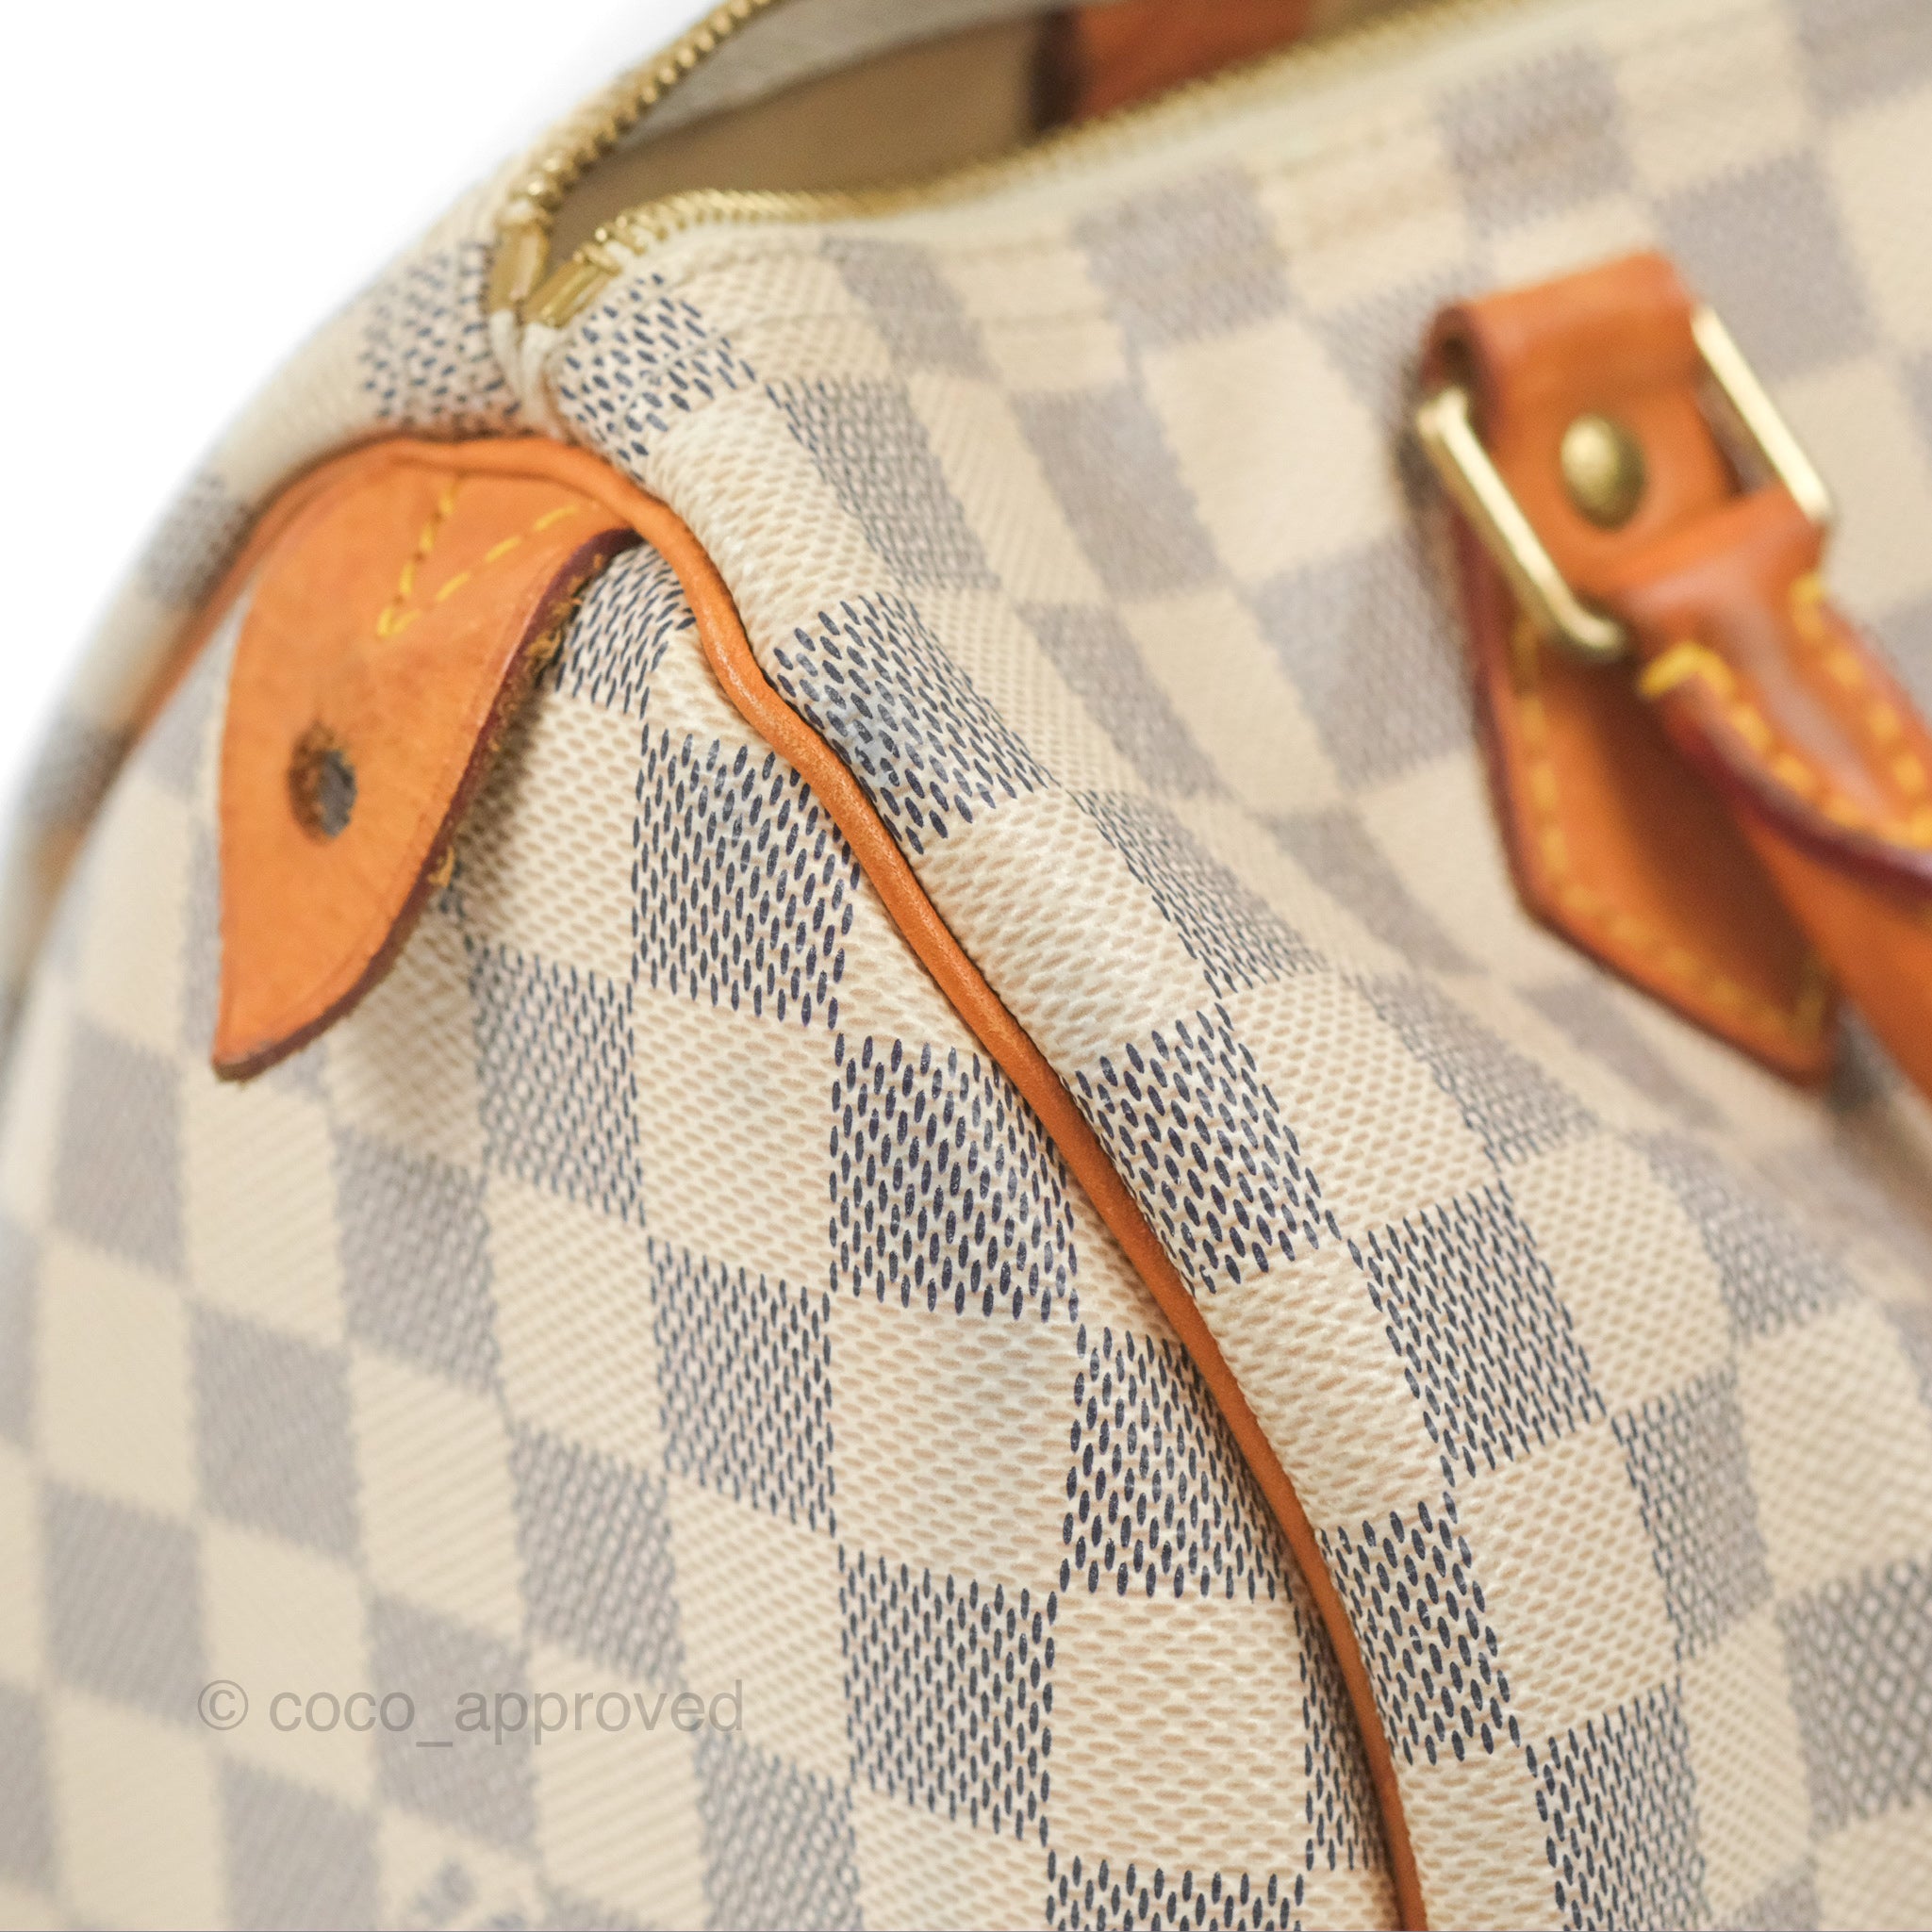 Louis Vuitton Speedy Bag Damier Azur Canvas 30 – Luxe Collective